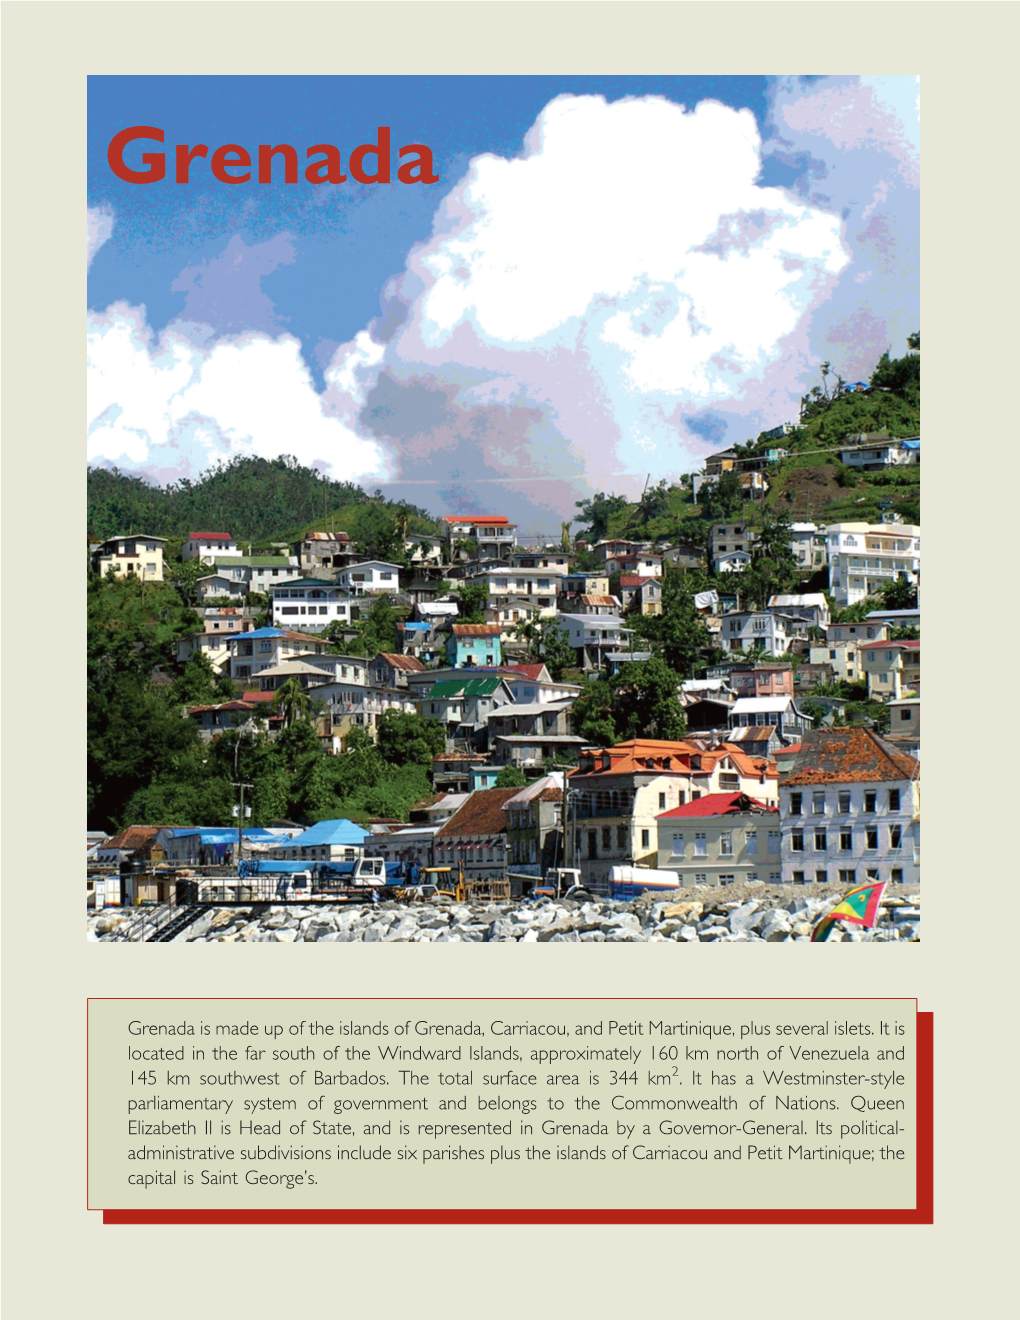 Grenada Overview